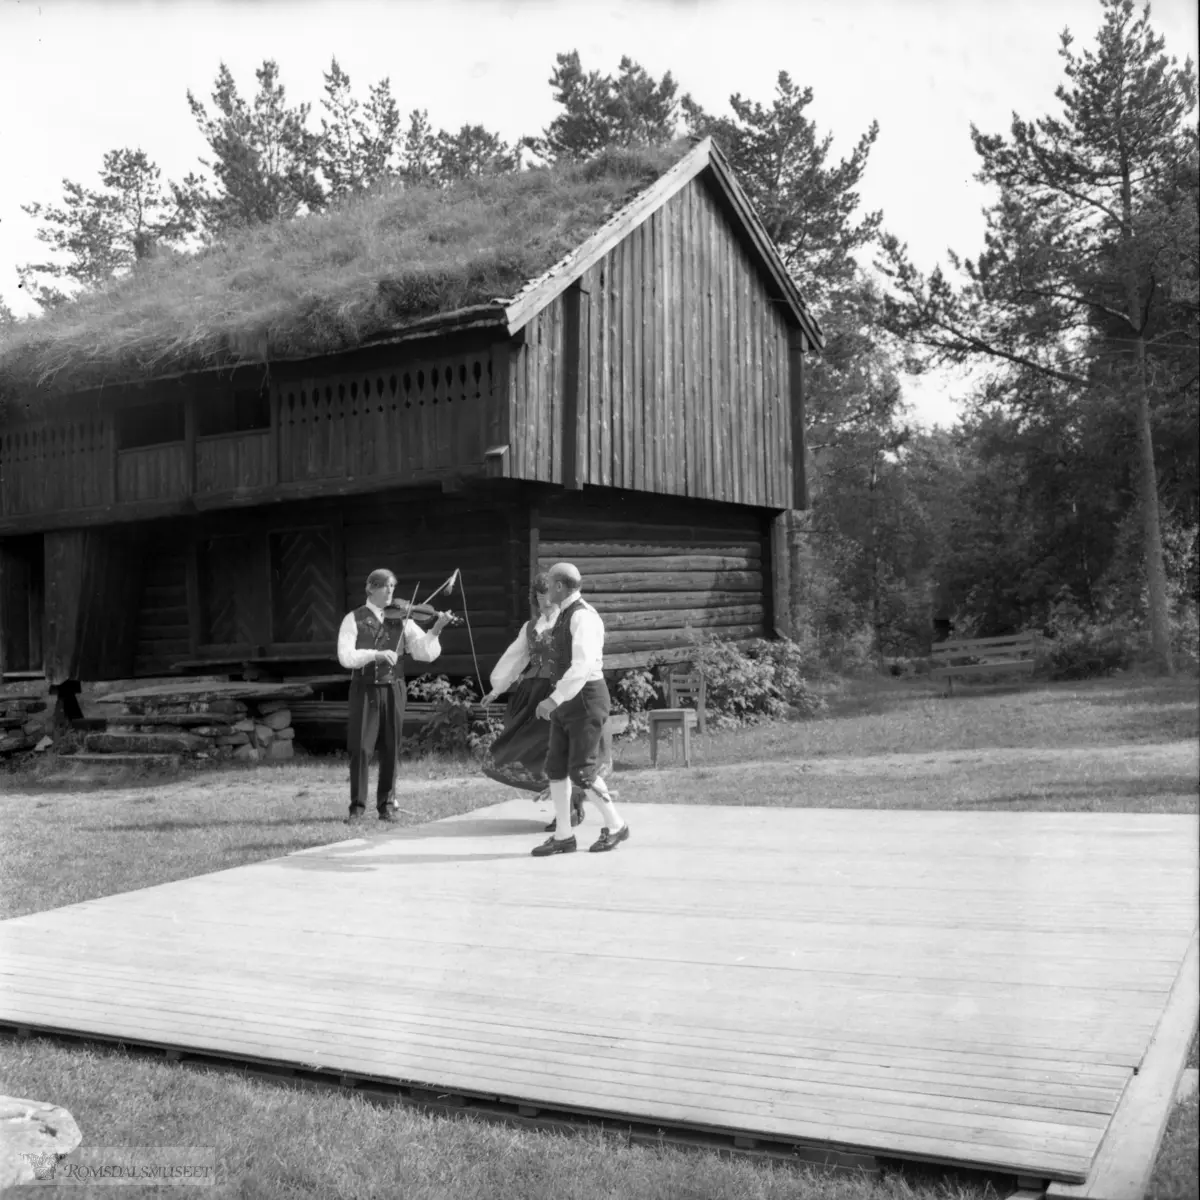 Innspilling av filmen "Romsdalsspringaren" på Eidetunet på Romsdalsmuseet i 1974. Filmen var laget av Egil Bakka. Danserne var fra Bondeungdomslaget i Molde. Spelemennene og spelekvinnen var også fra Bondeungdomslaget og Romsdal Spelemannslag.